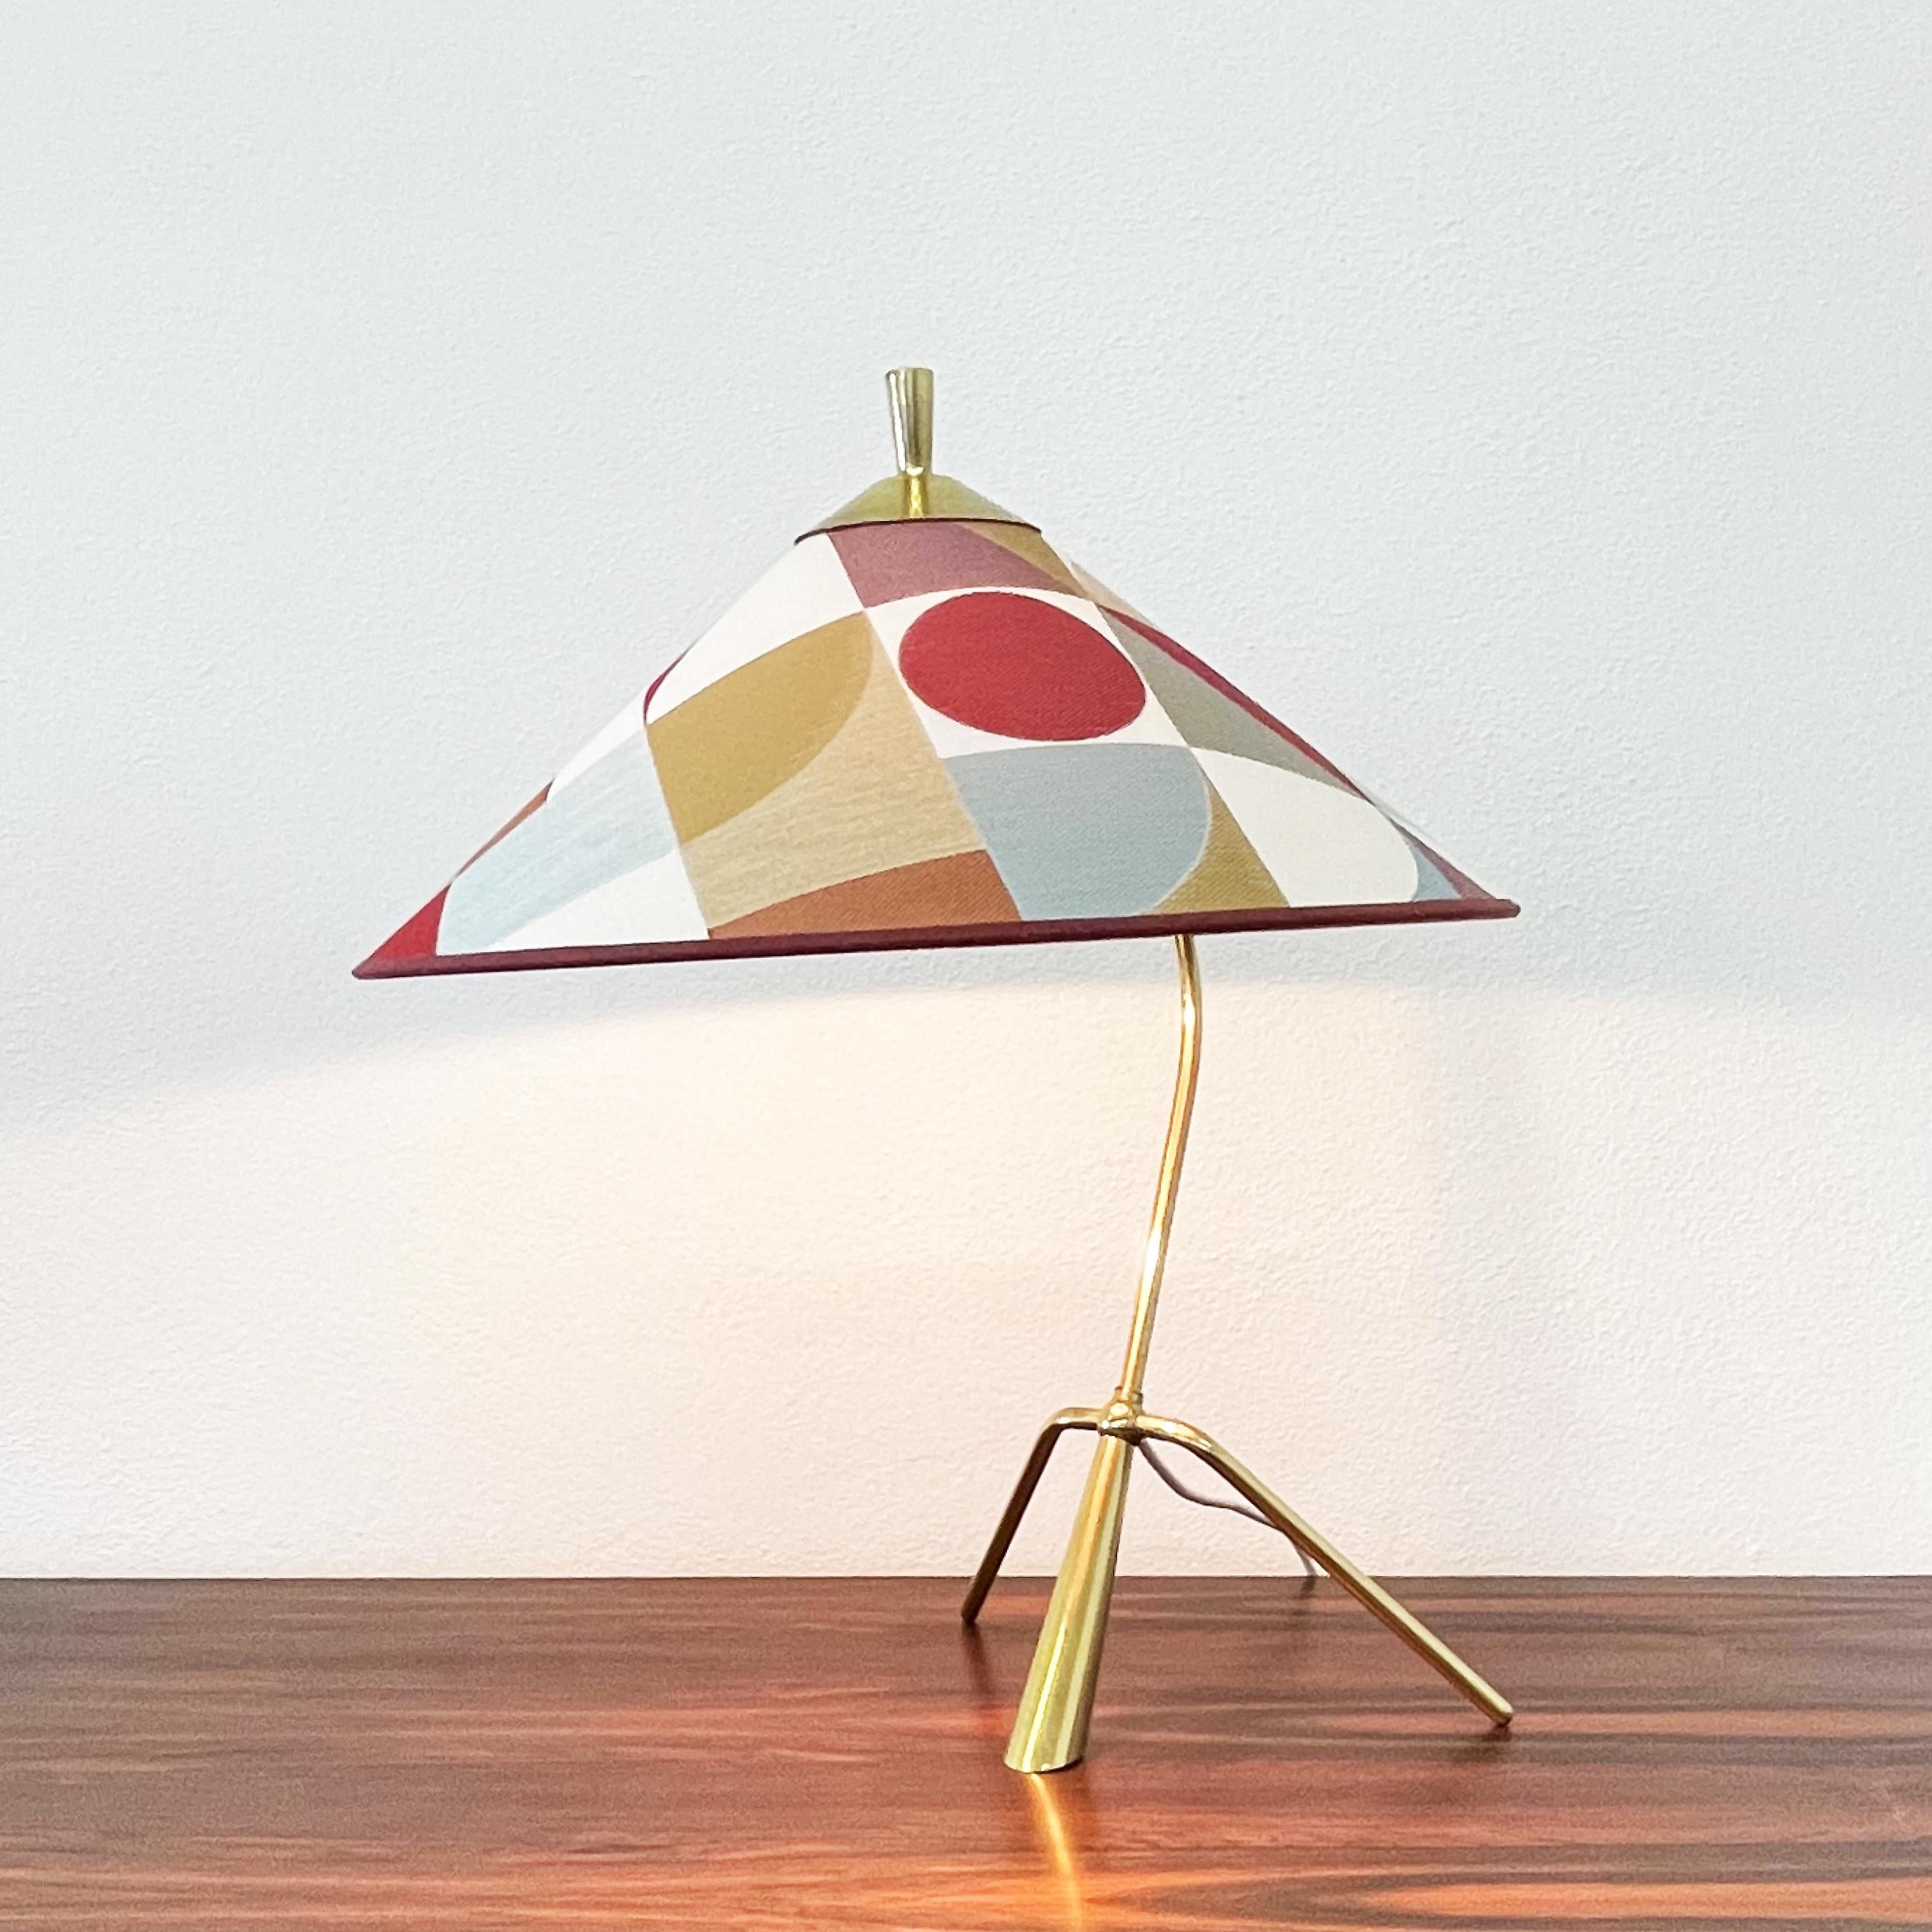 Dänische Tischlampe aus den 1960er Jahren.
Optionaler Schirm aus schönem monochromen Stoff